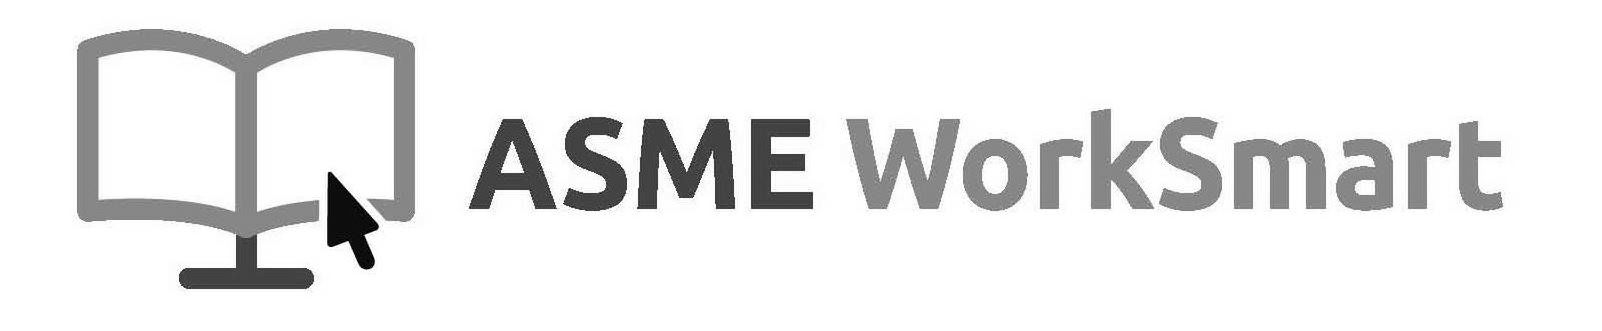 Trademark Logo ASME WORKSMART